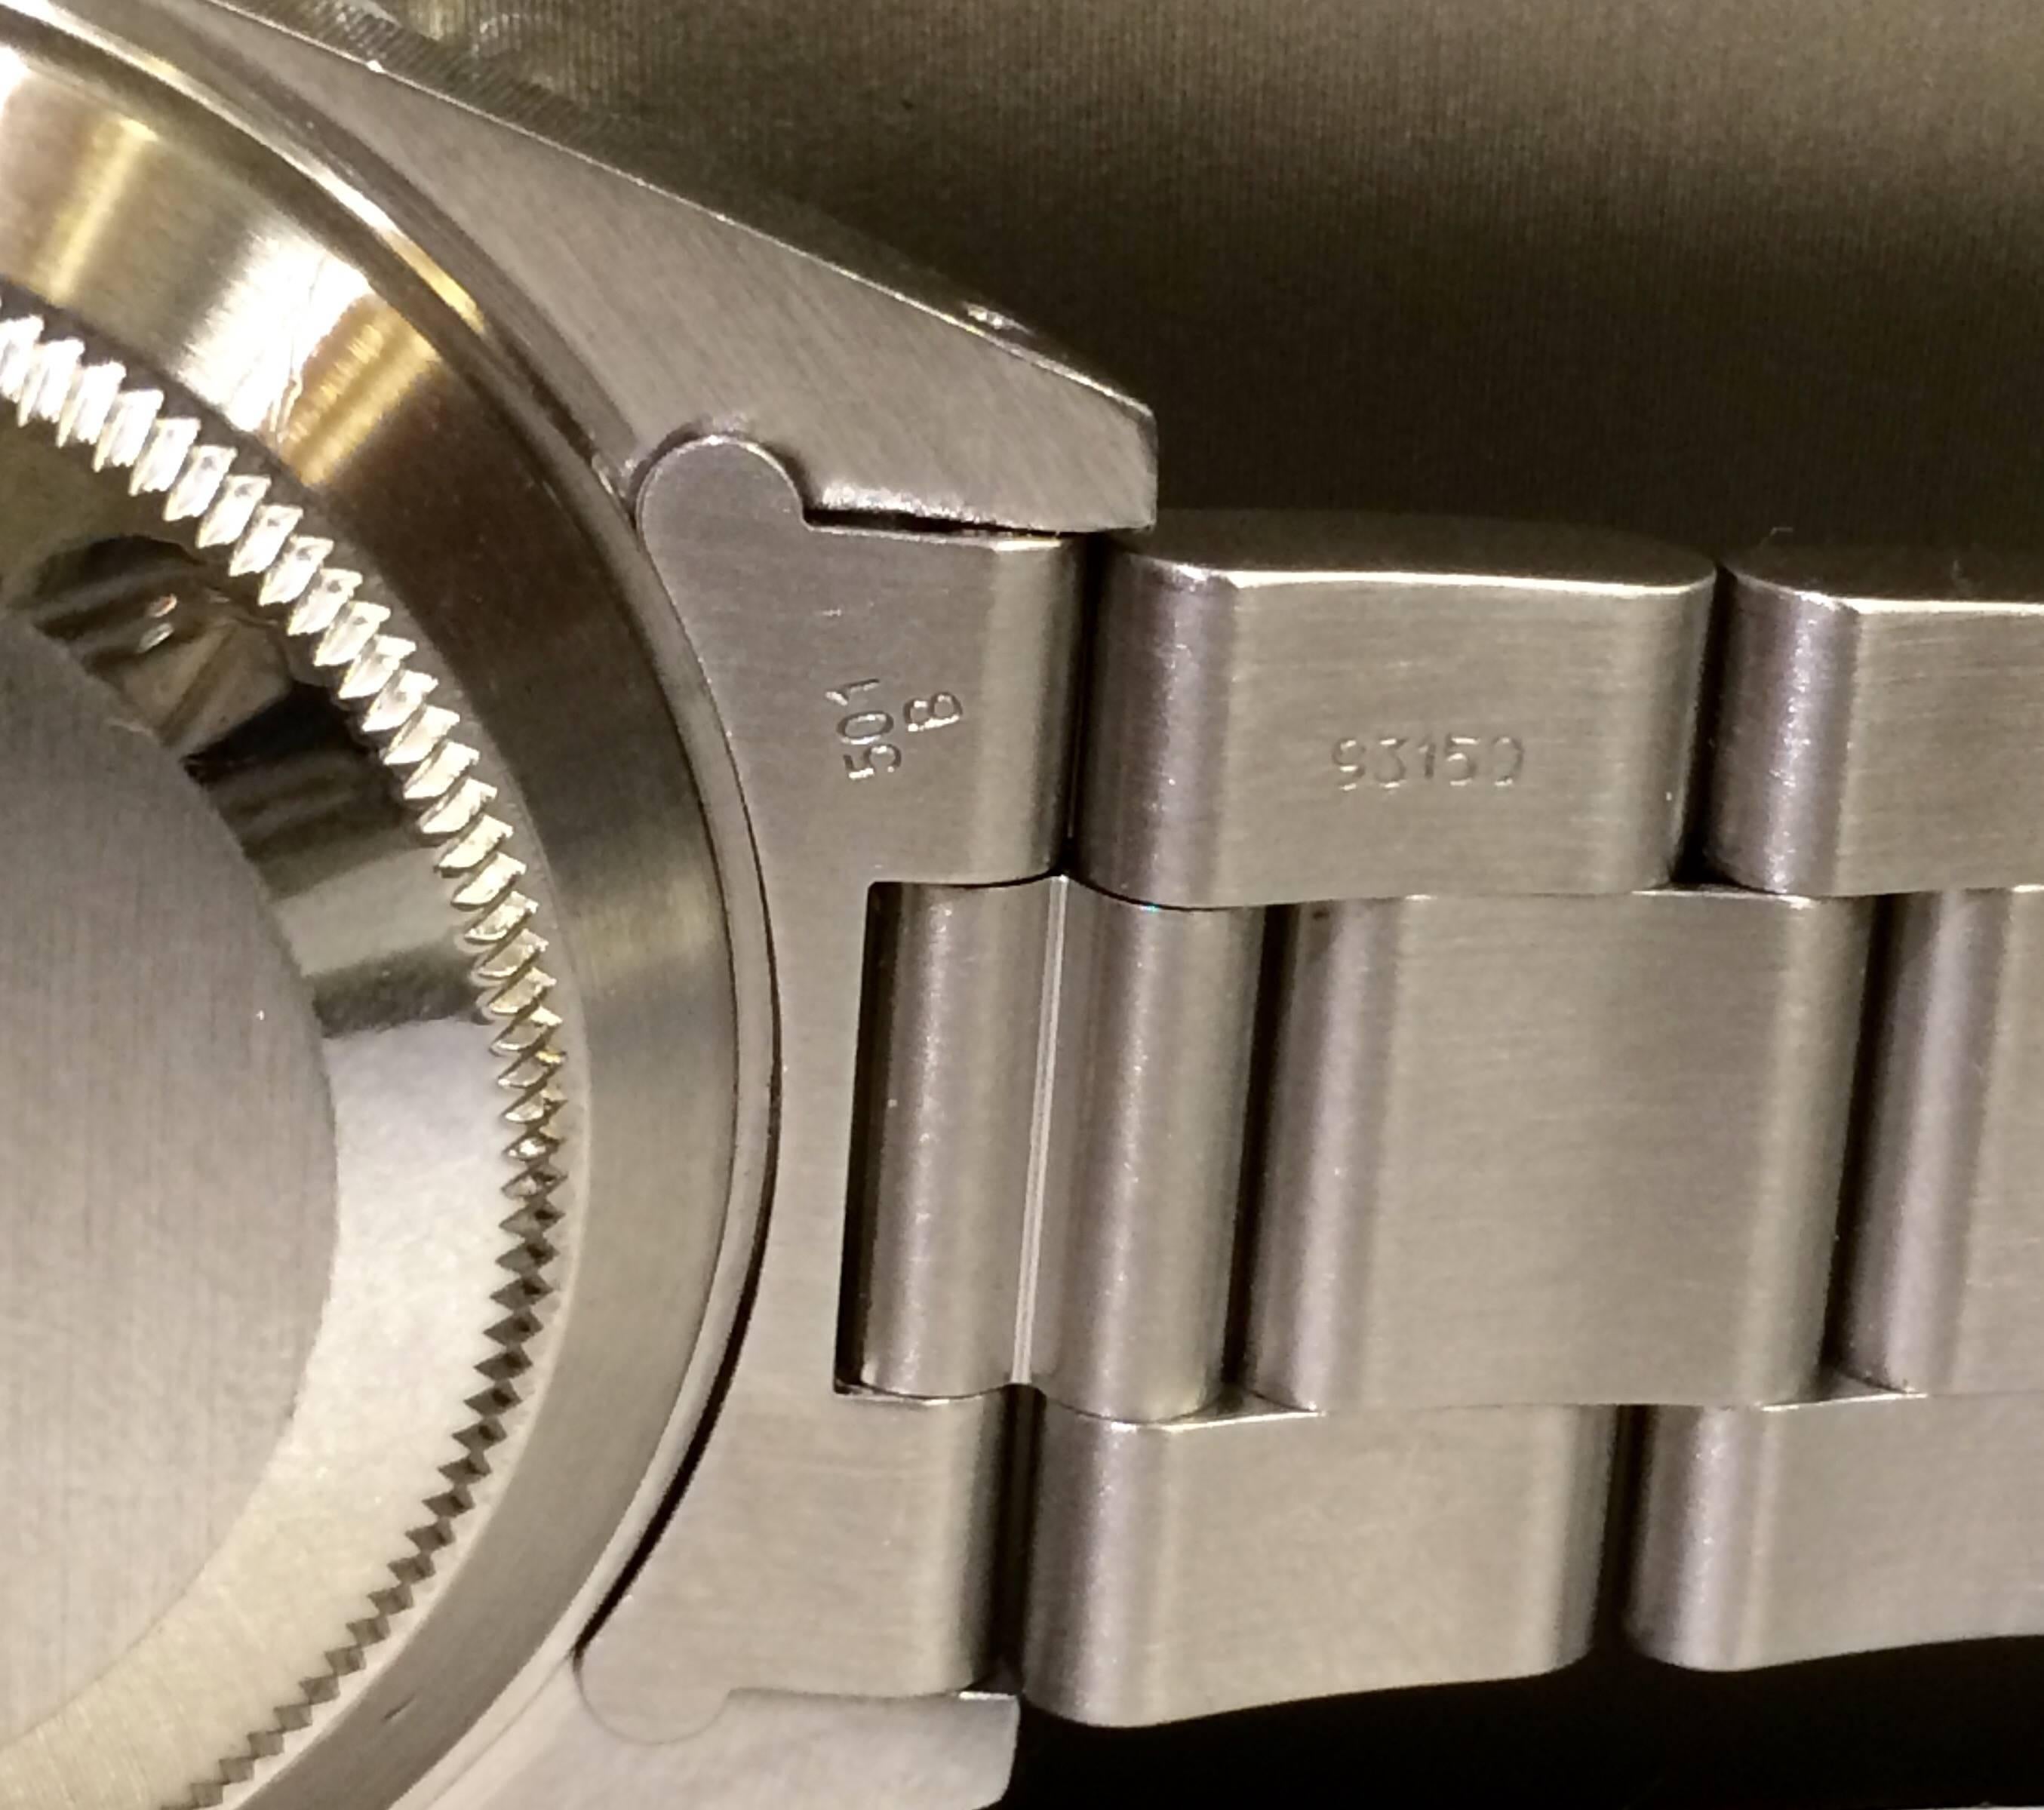 Rolex Stainless Steel Submariner Date Wristwatch Ref 11610 3